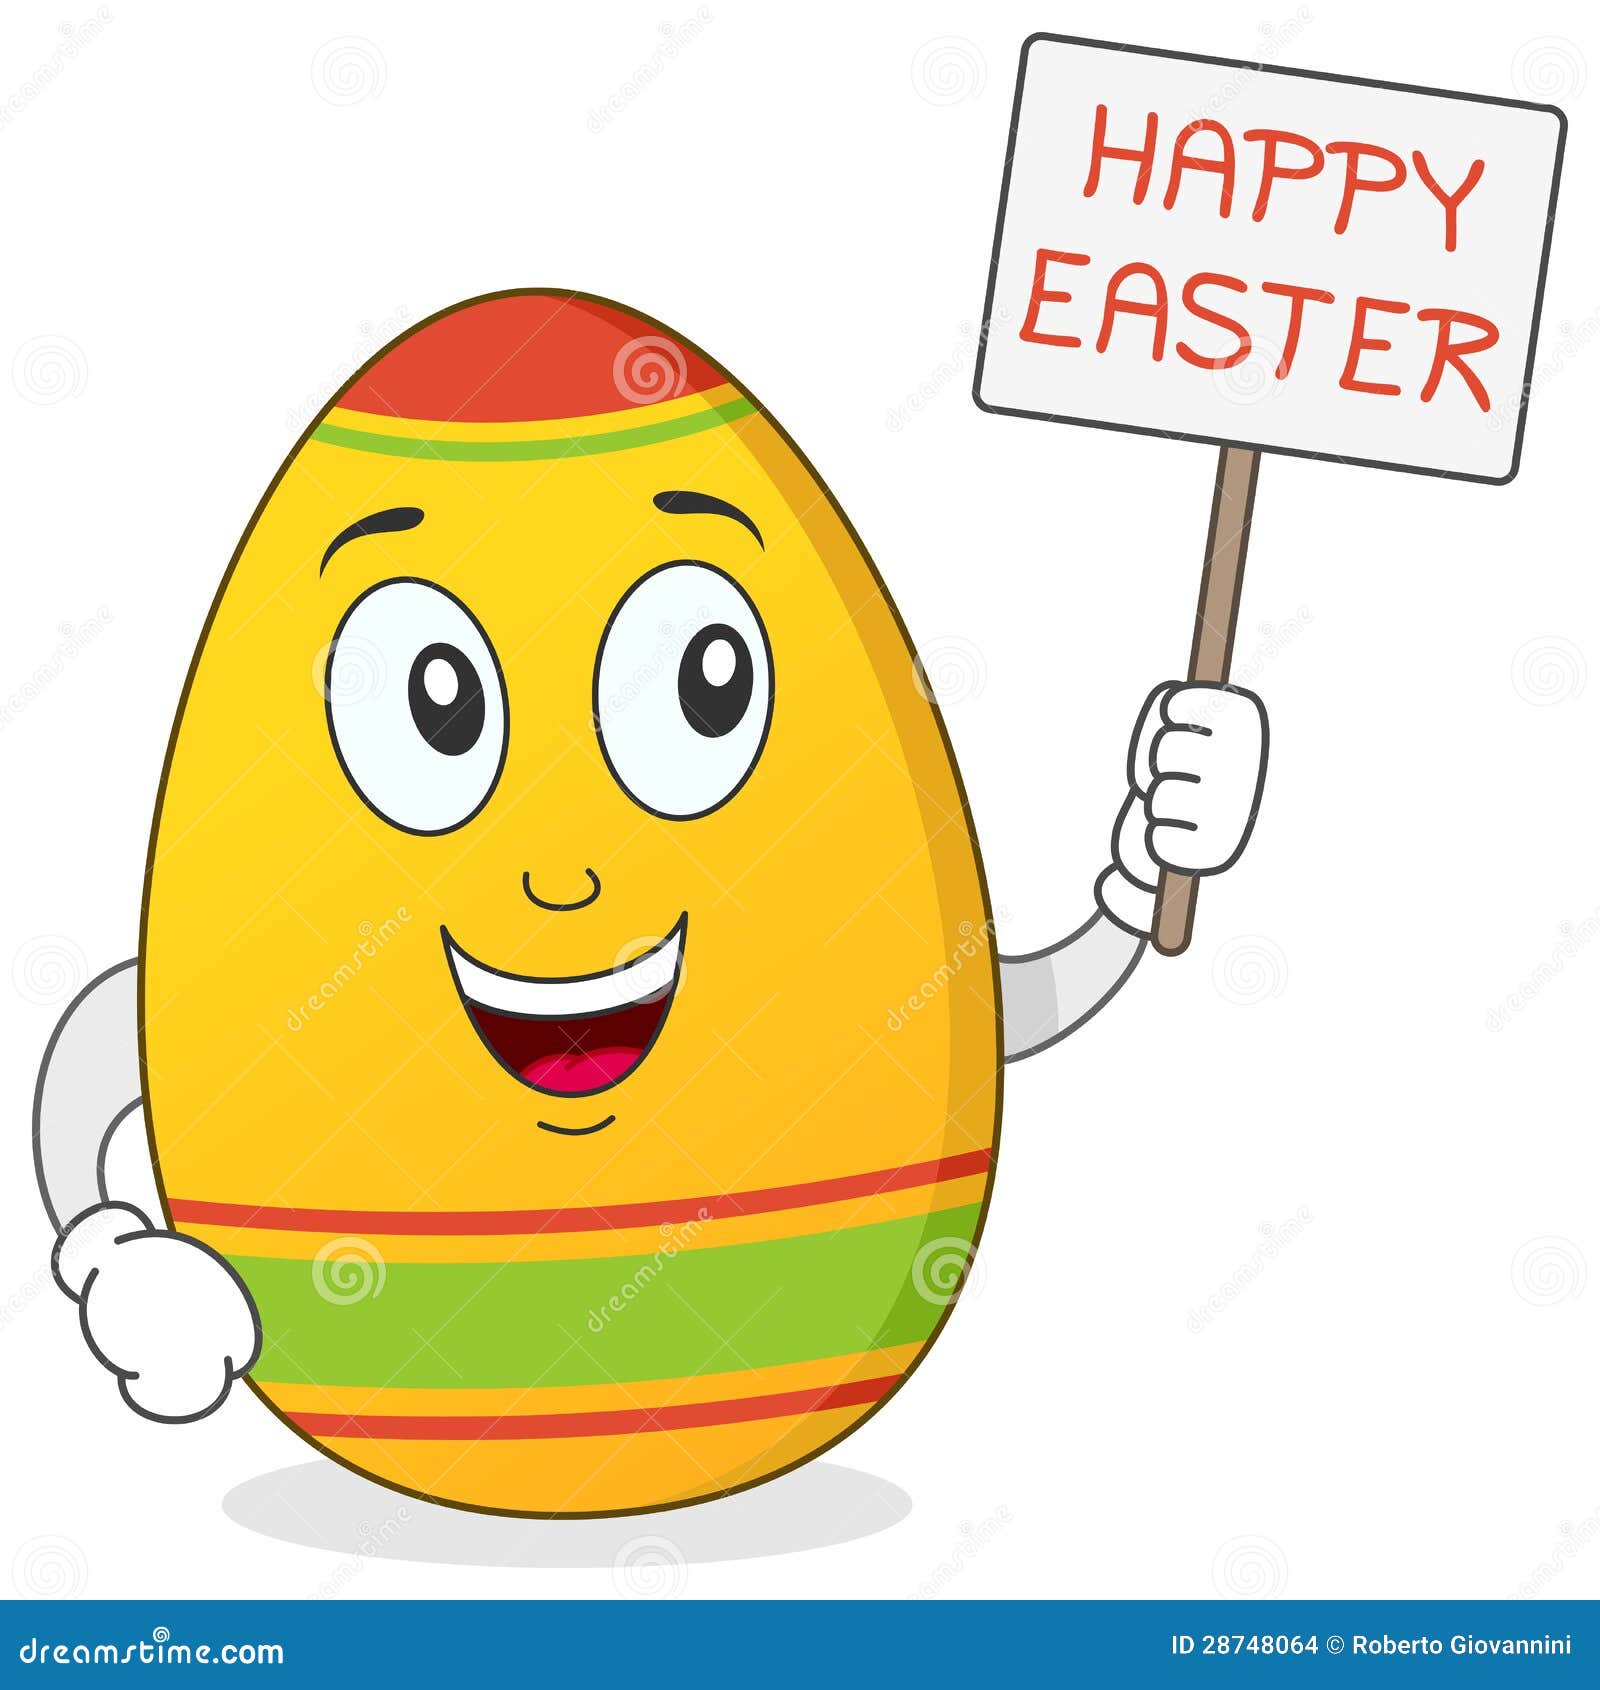 happy-easter-egg-character-28748064.jpg